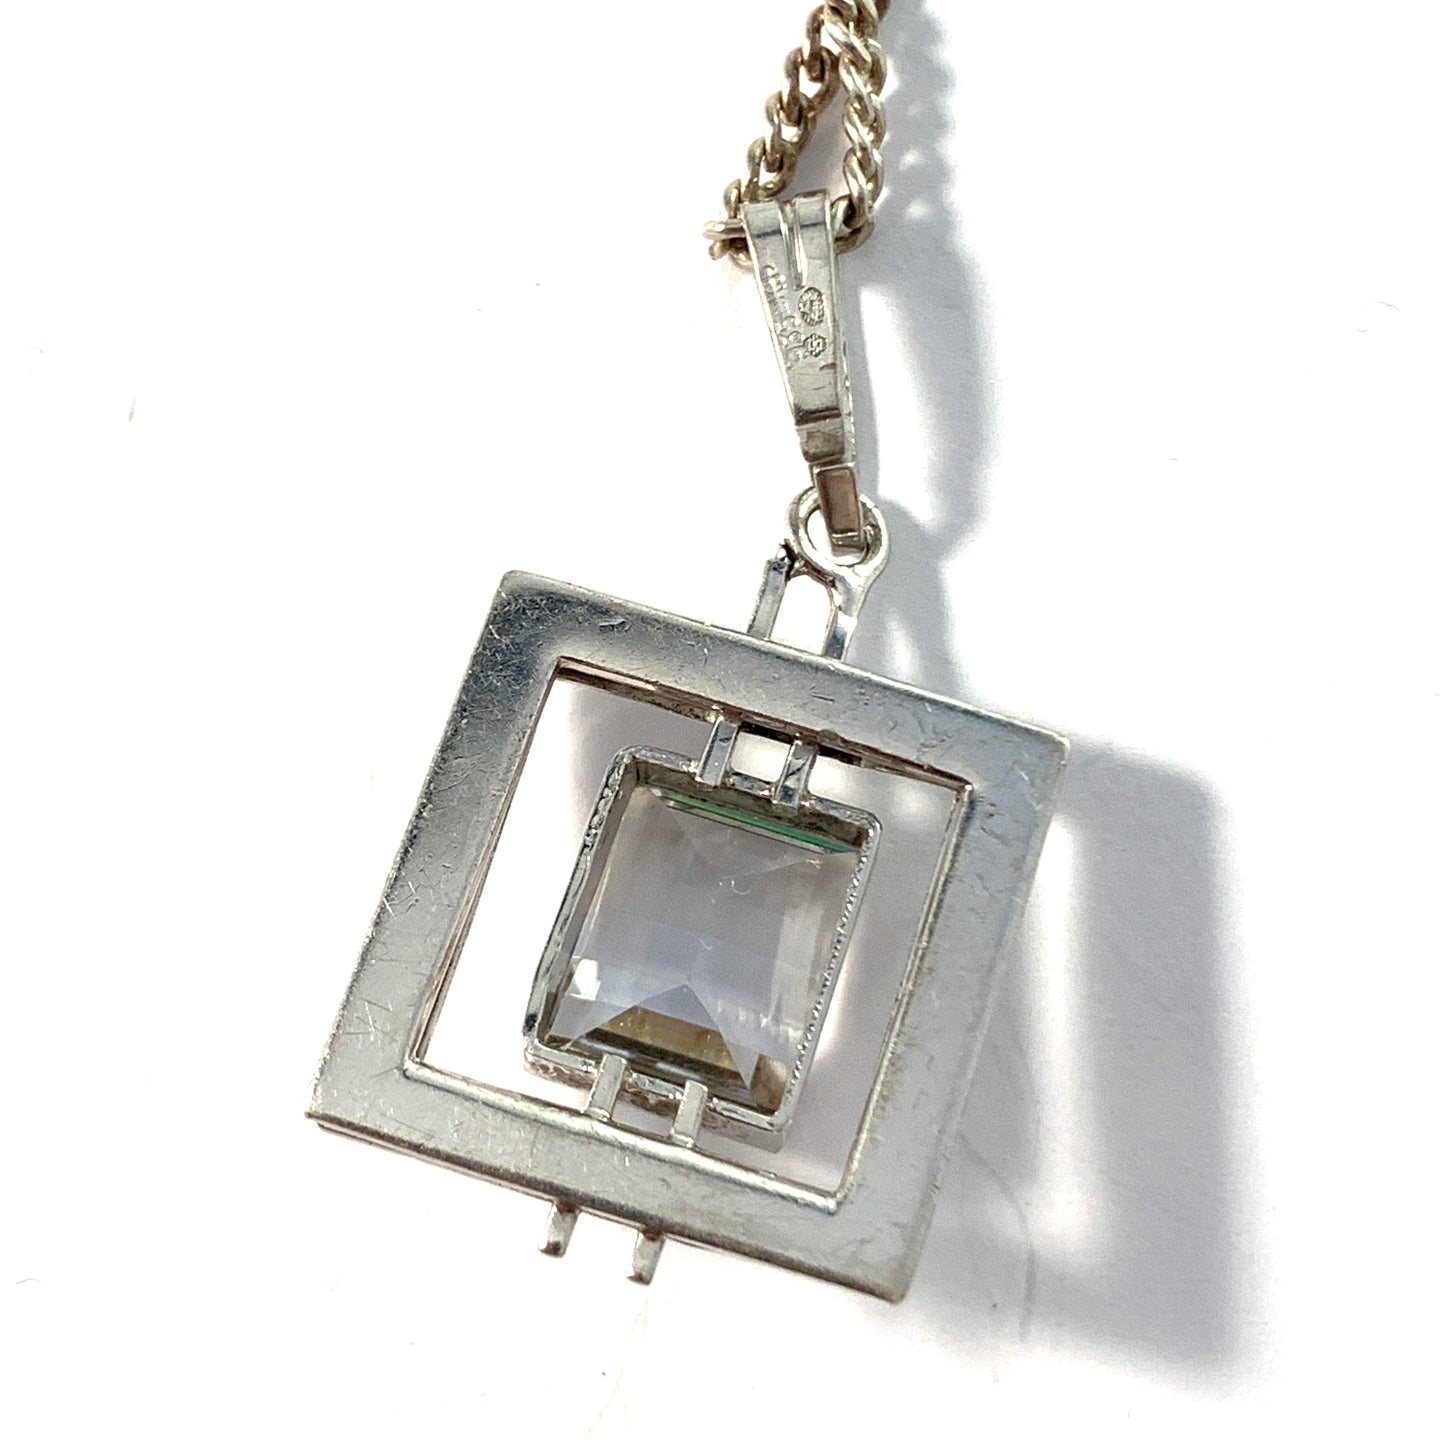 Kollmar & Jourdan, Germany 1950-60s Solid Silver Rock Crystal Pendant Long Chain Necklace.